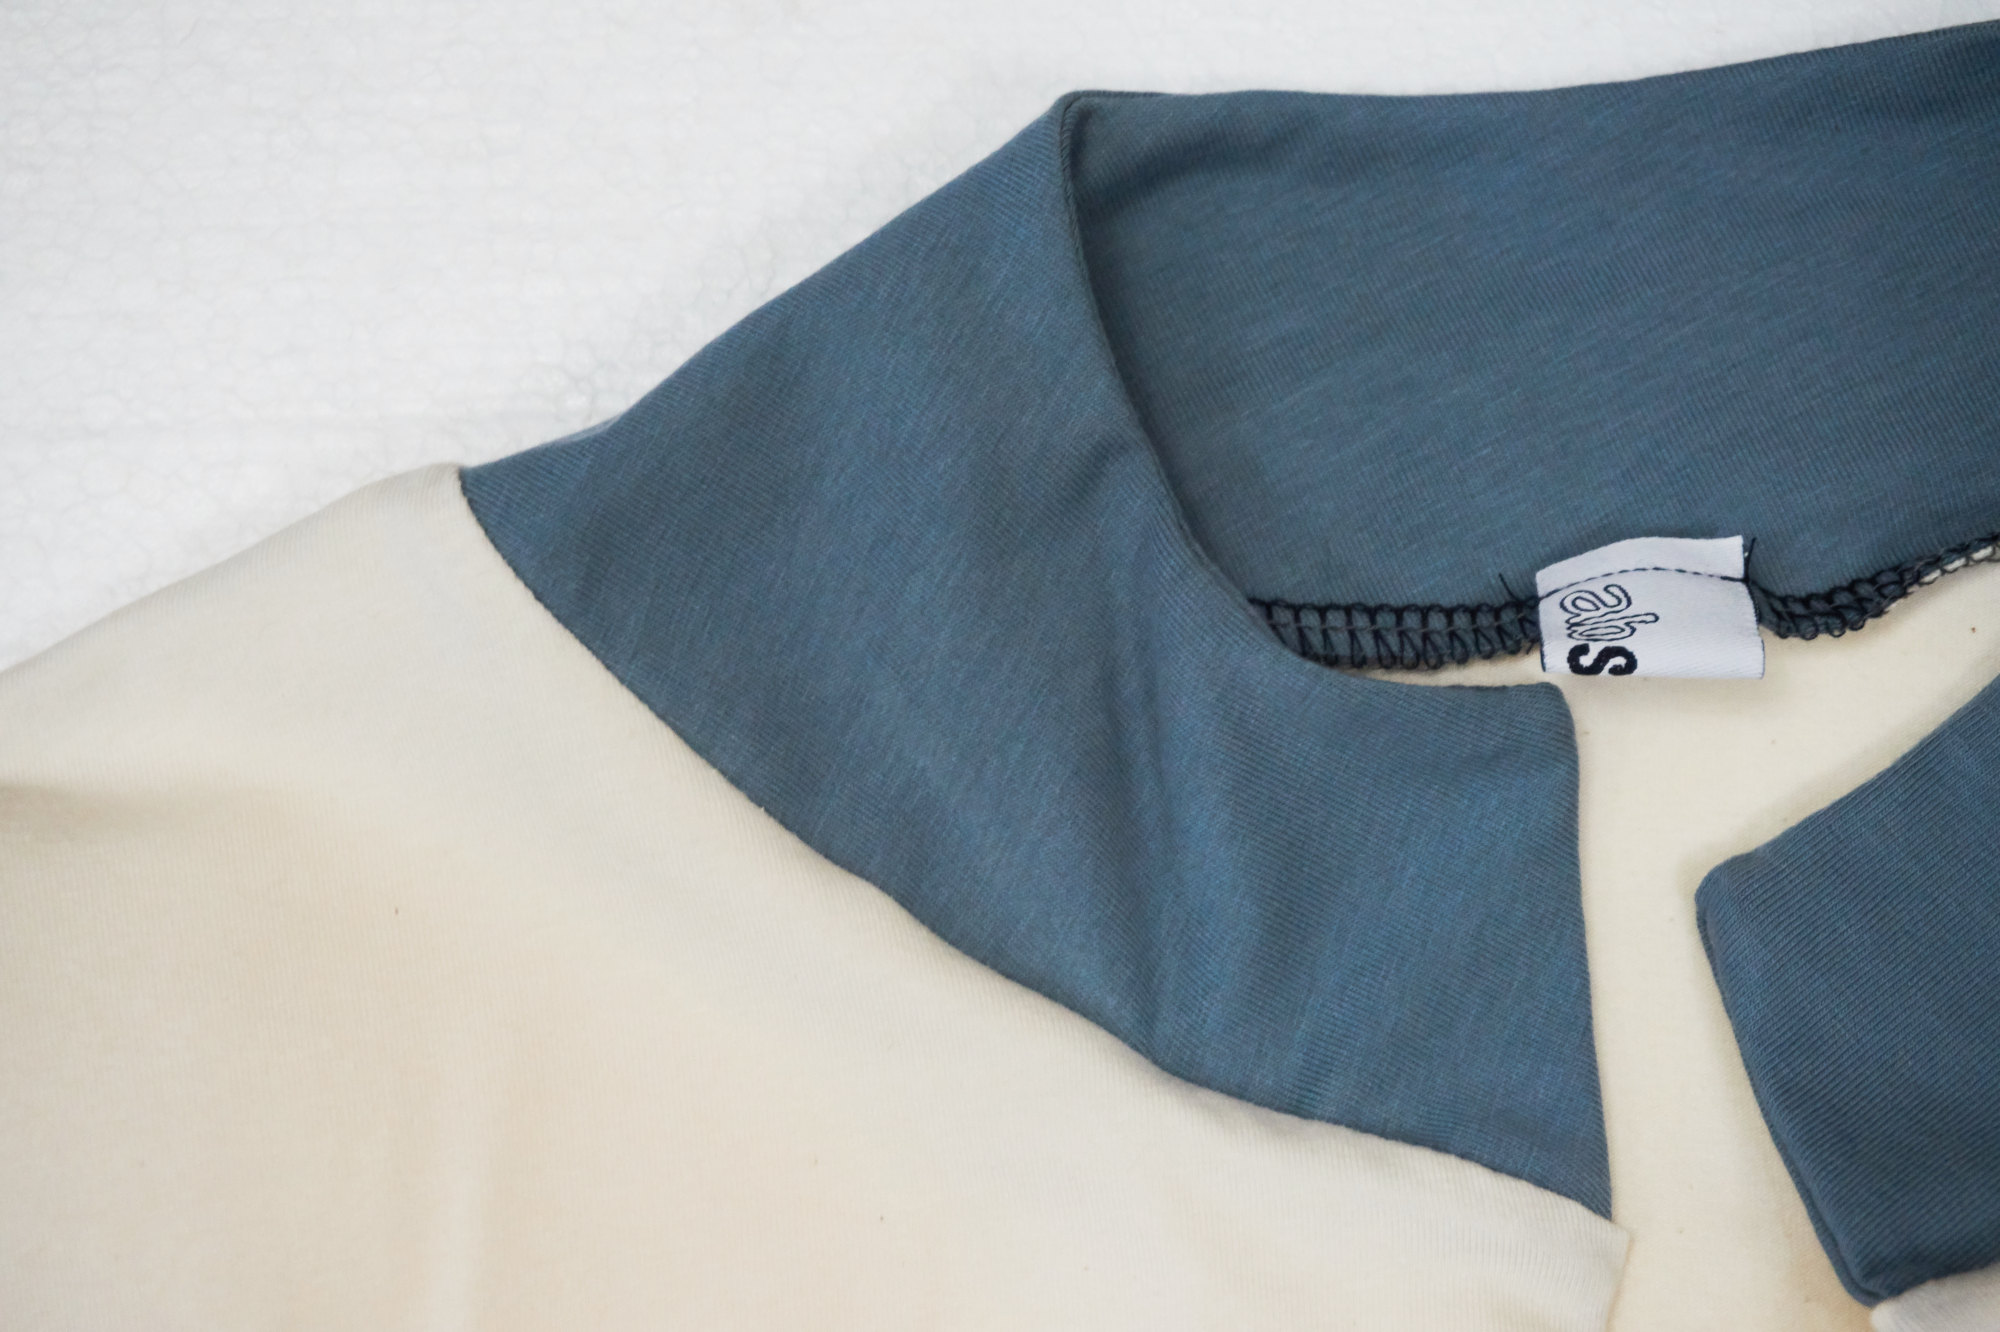 giacca aperta con inserti a contrasto. 95% cotone 5% elastane